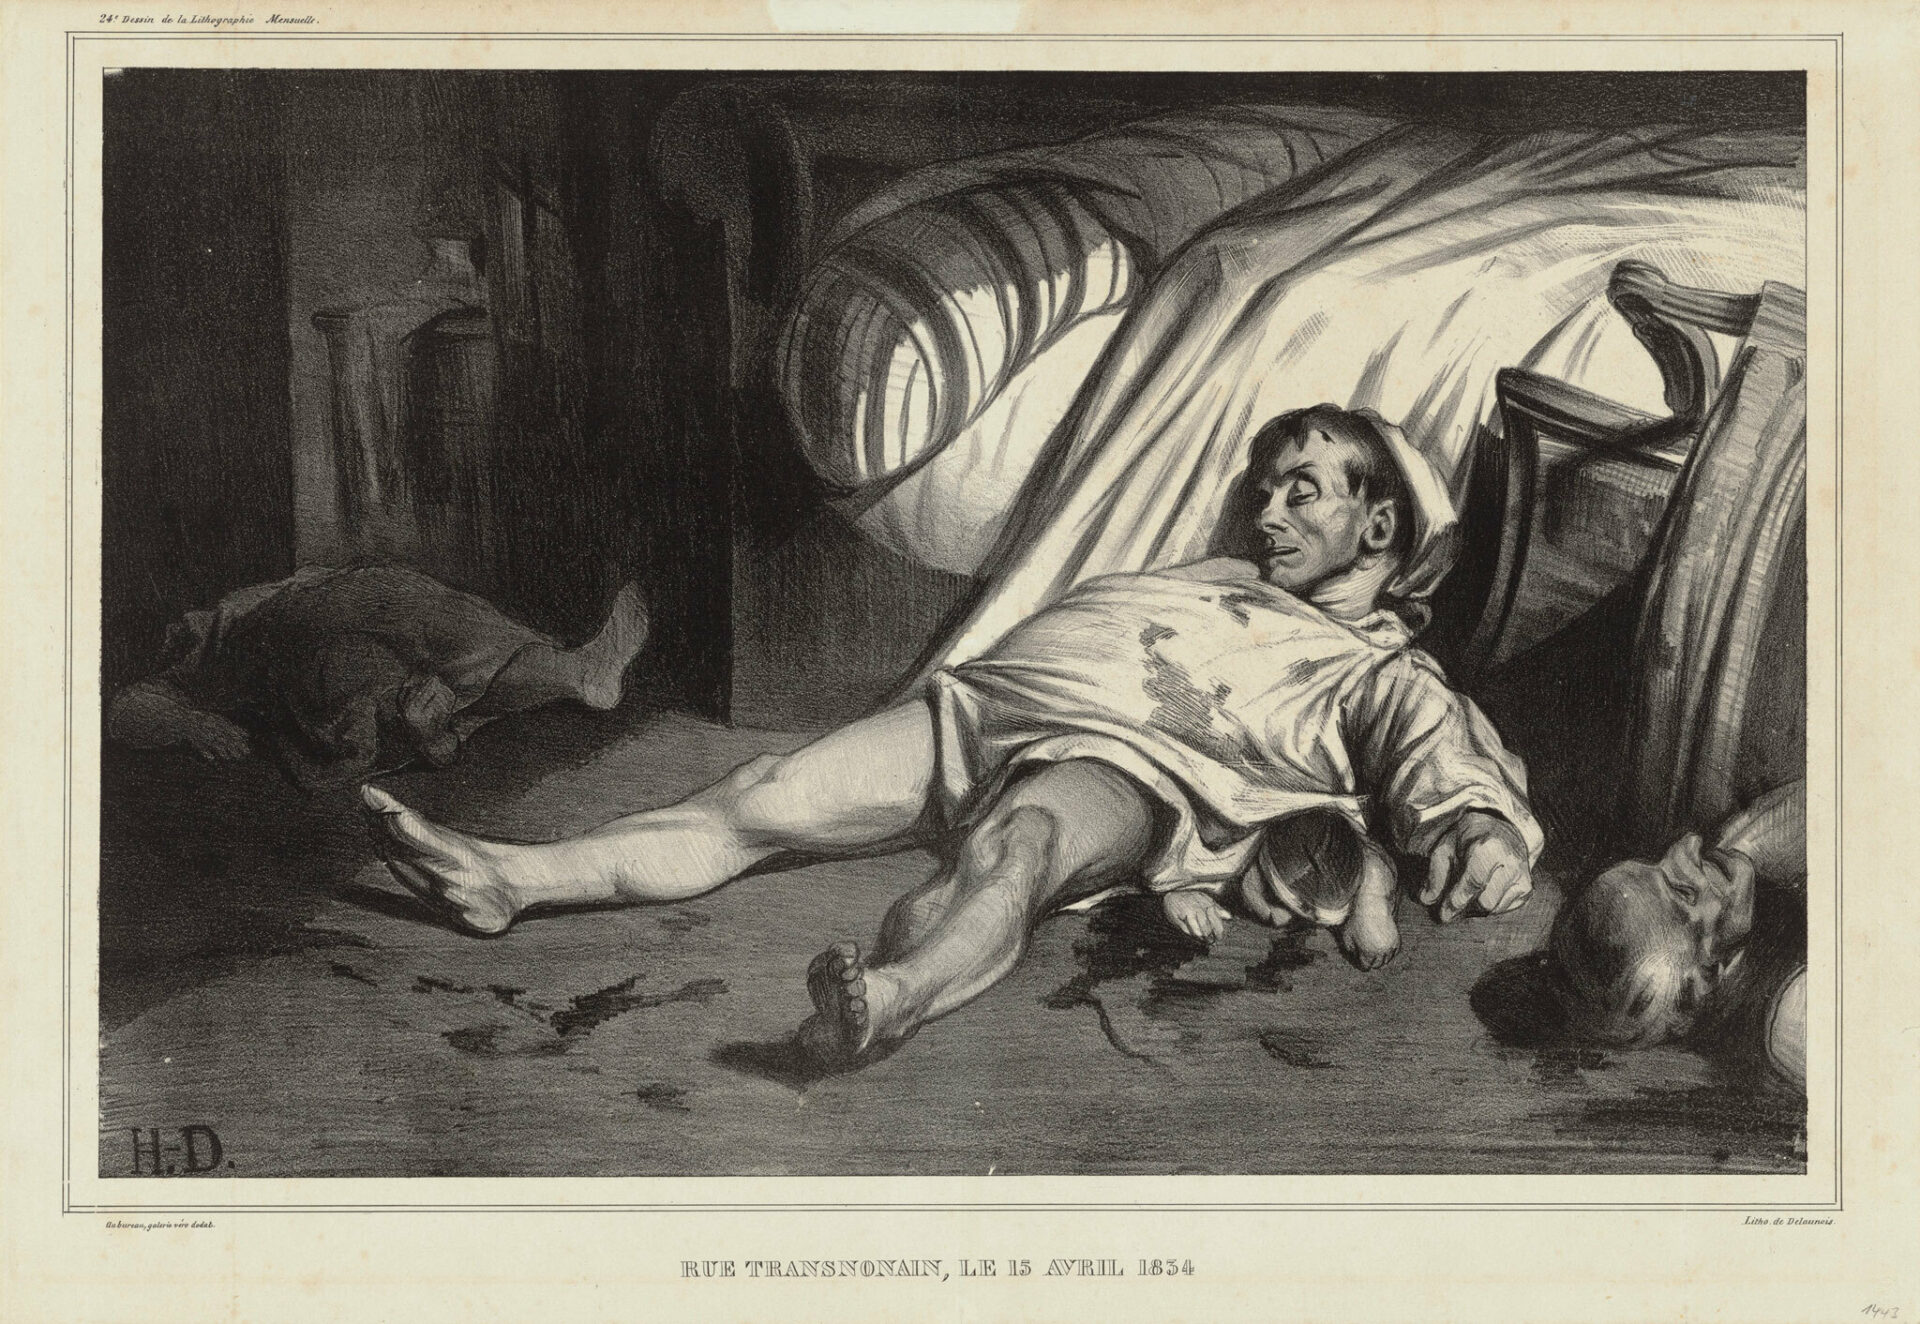 2024_Daumier_Pressebild_Rue Transnonain le 15 avril 1834_Rue Transnonain am 15 April 1834